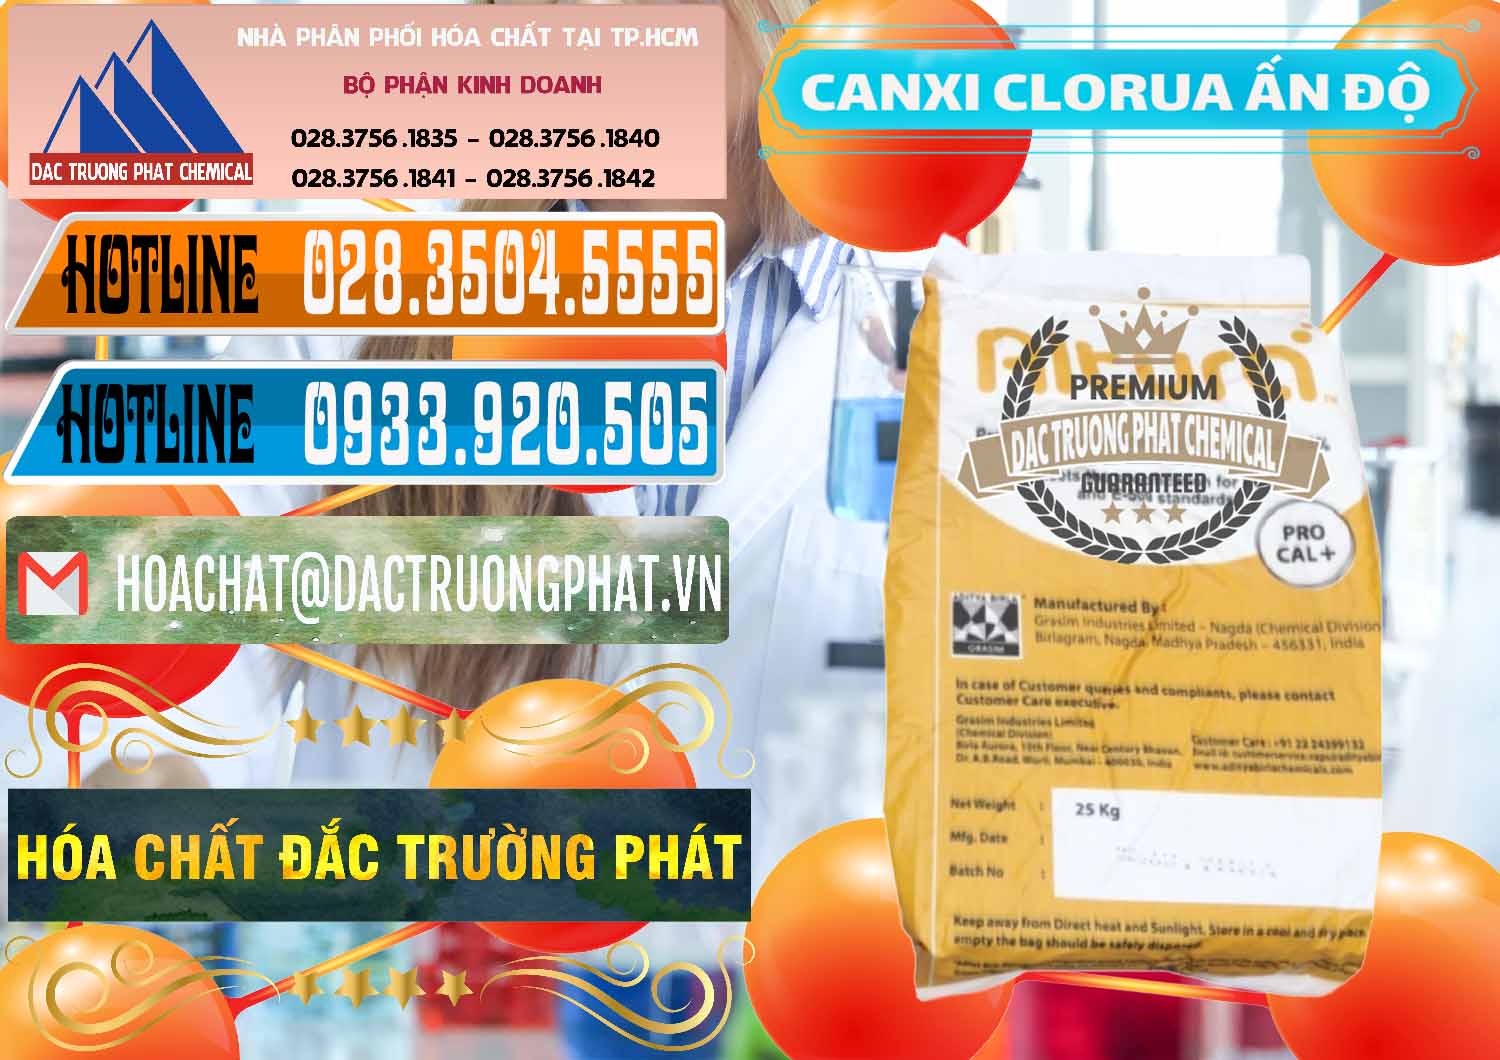 Chuyên bán & phân phối CaCl2 – Canxi Clorua Food Grade Altura Aditya Birla Grasim Ấn Độ India - 0436 - Đơn vị cung ứng & phân phối hóa chất tại TP.HCM - stmp.net